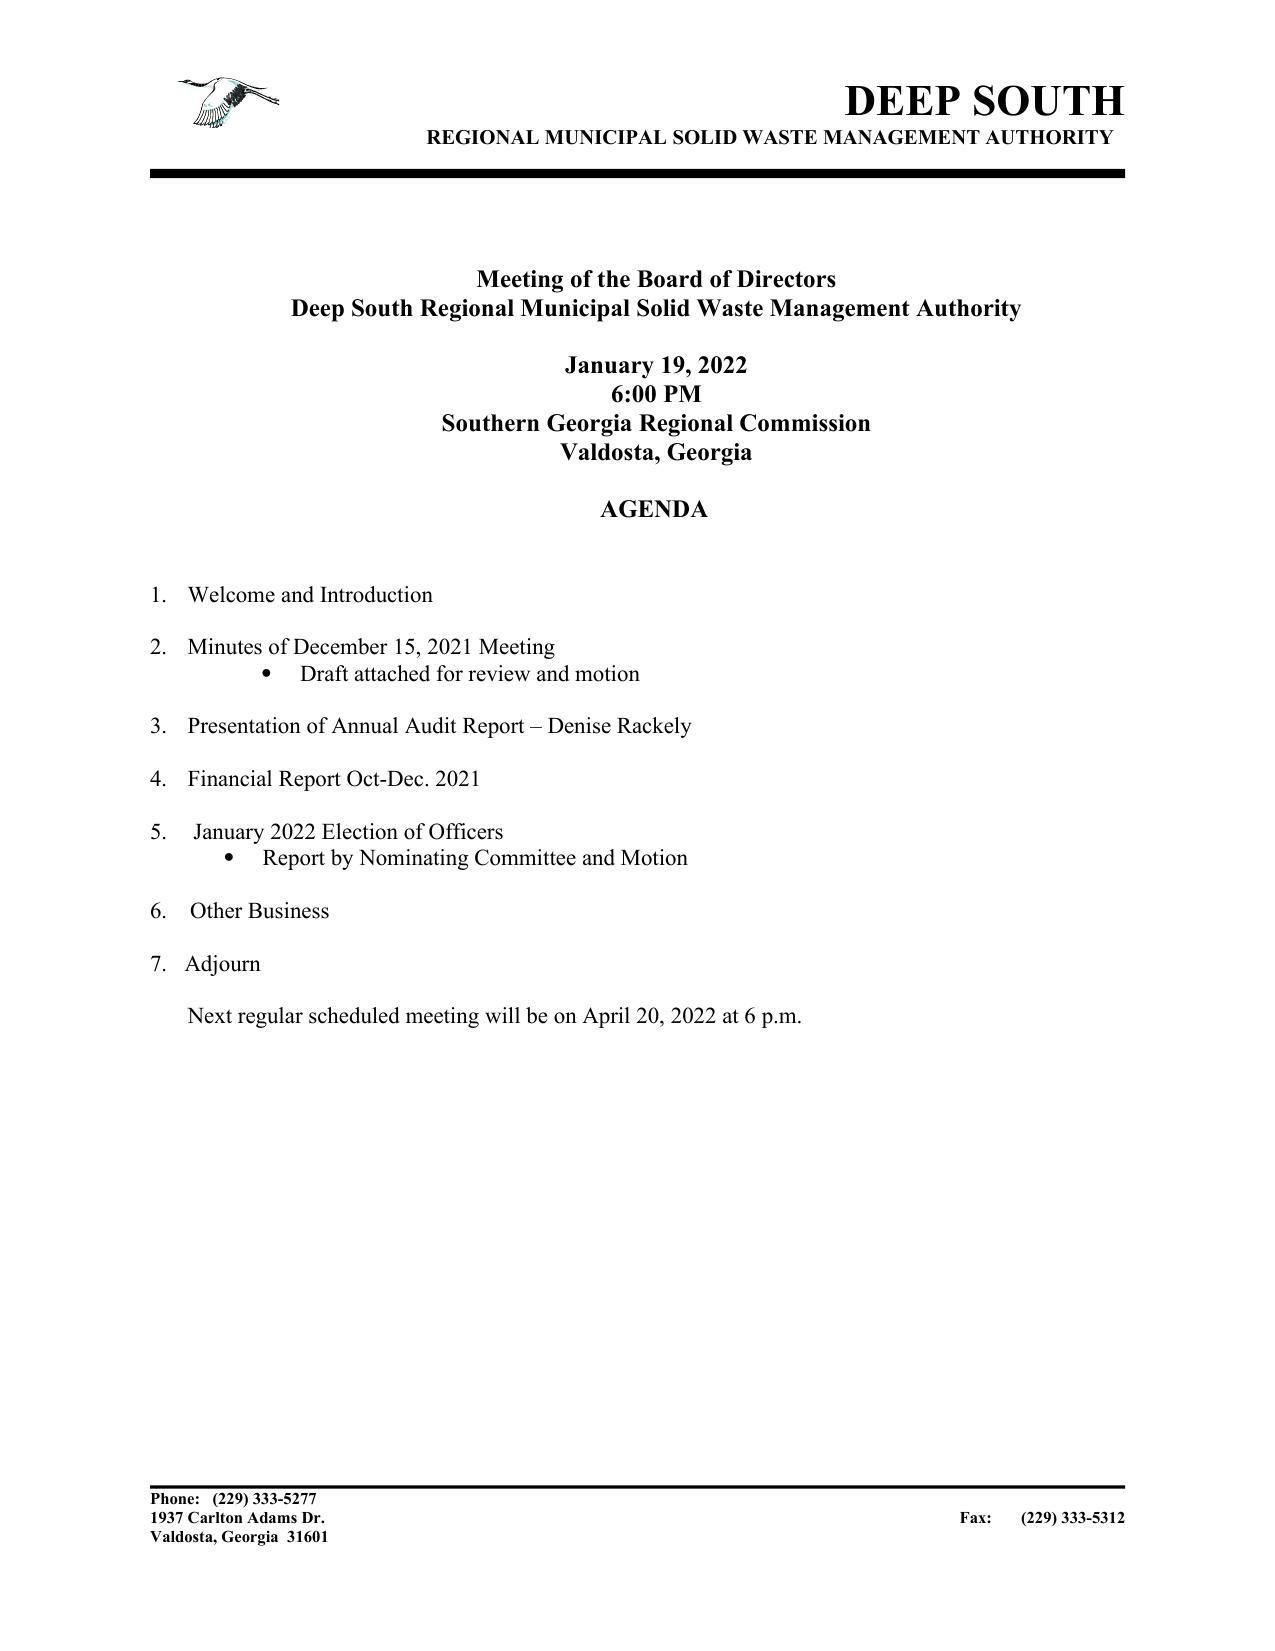 DSSWA Agenda 2022-01-19